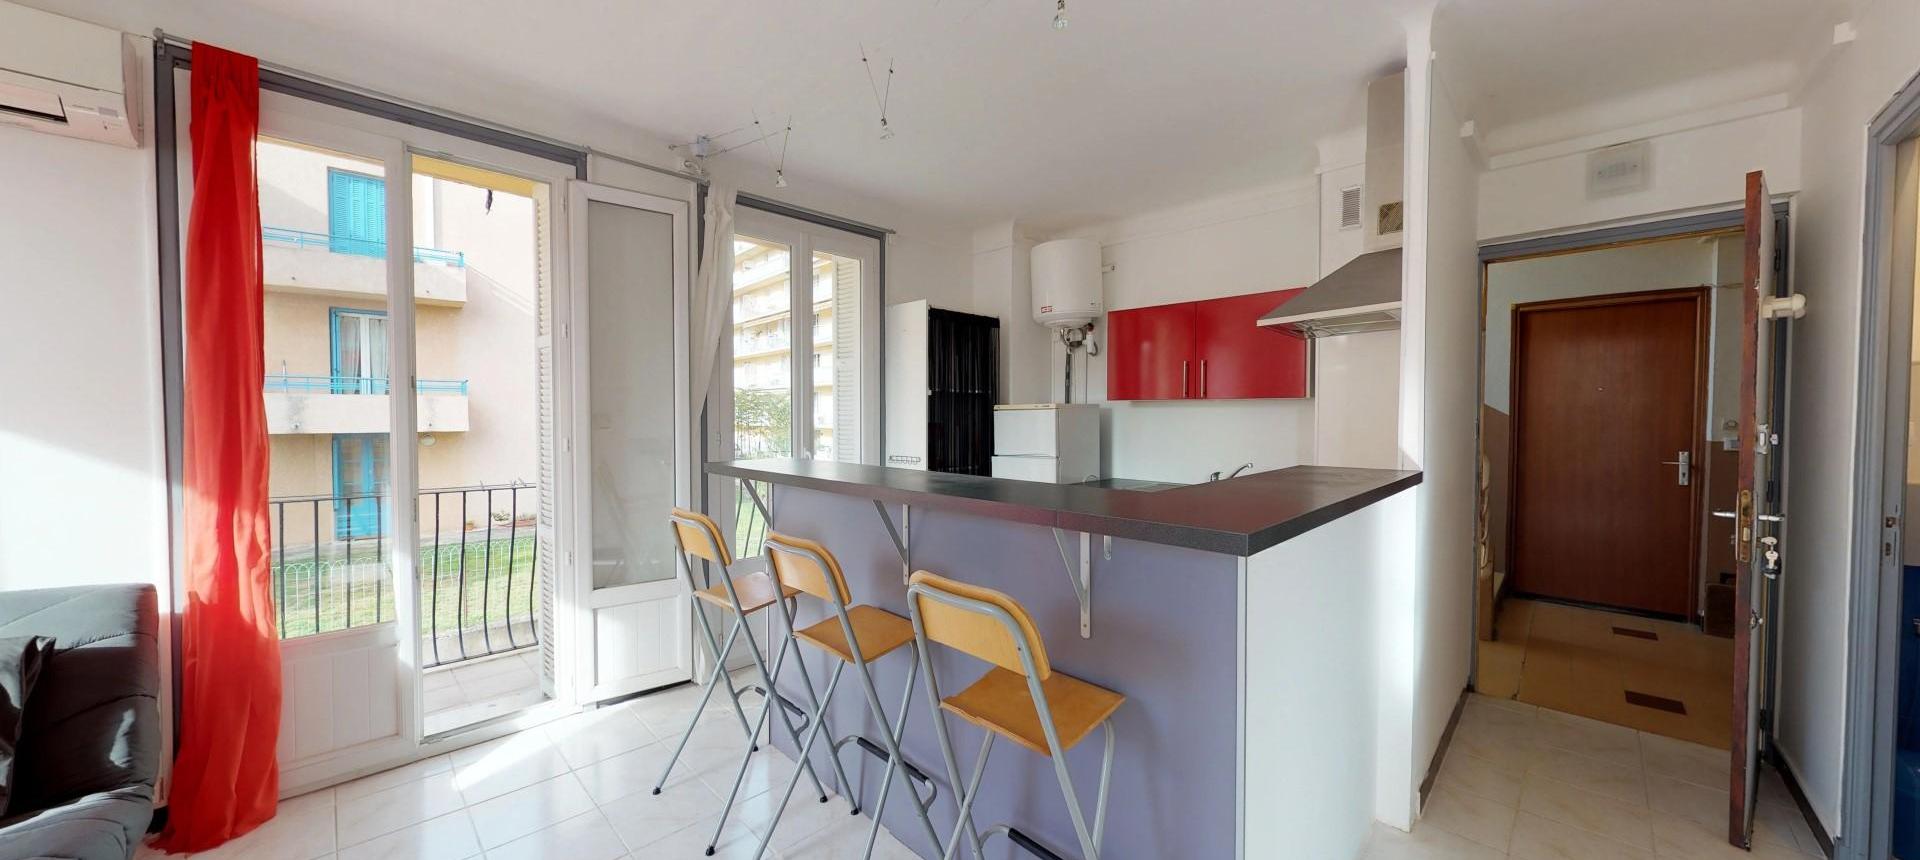 En Corse, à Ajaccio, un appartement de type F2 d'une superficie de 38 m² avec balcon, quartier Saint Jean